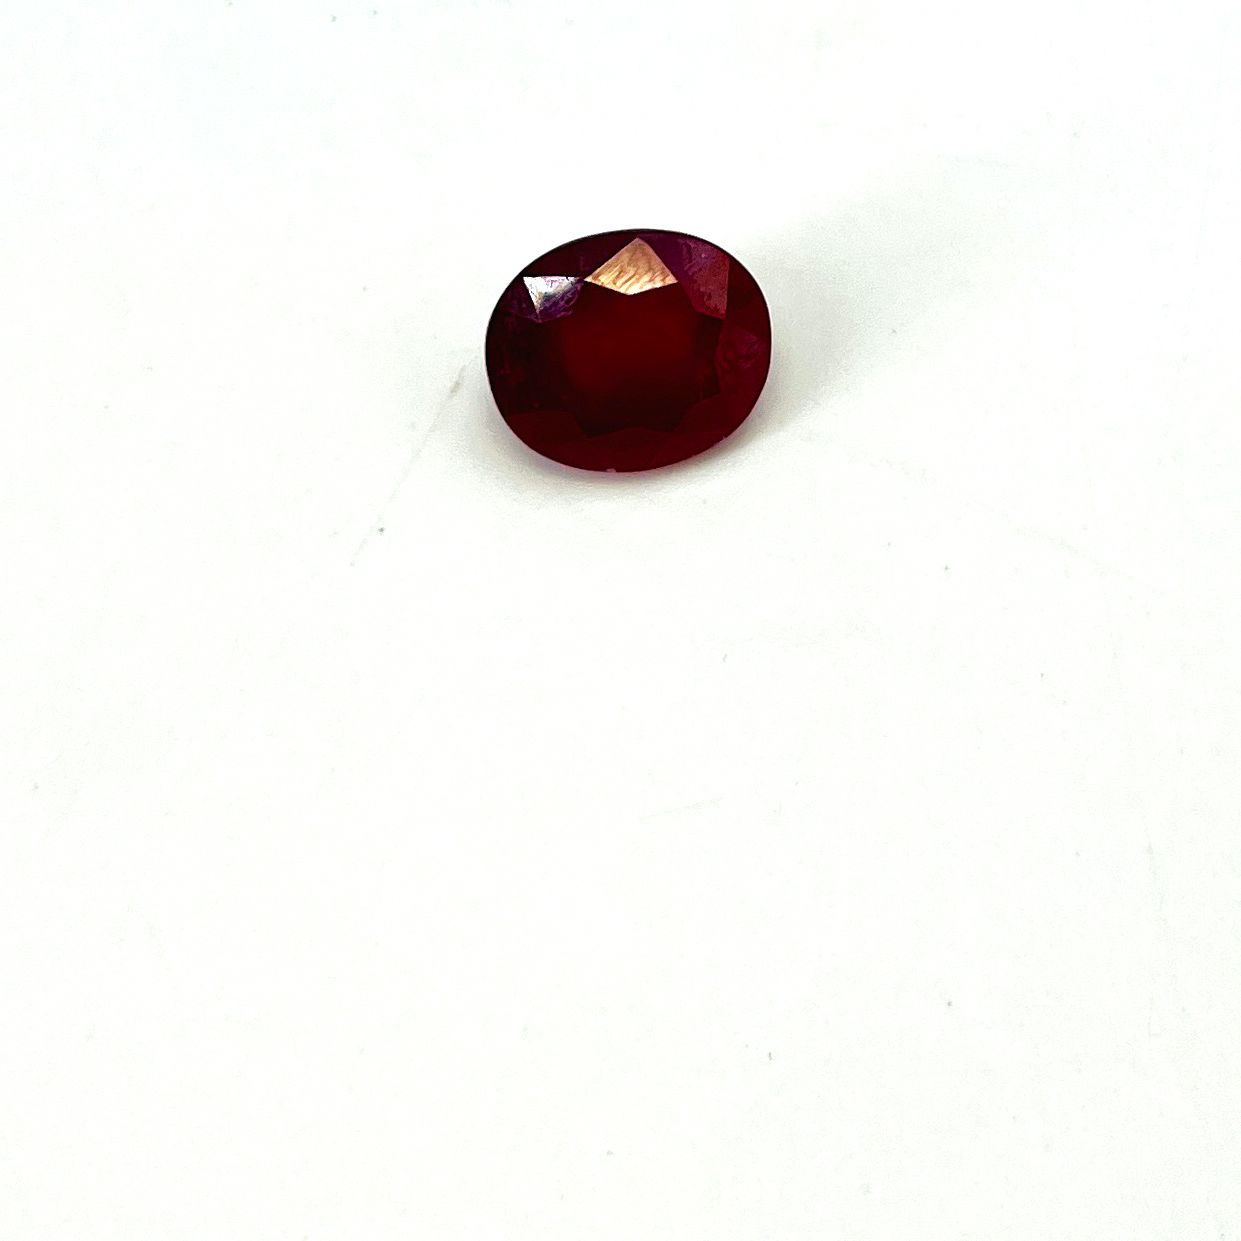 Null Behandelter ovaler Rubin mit einem Gewicht von 7,13 Karat Maße: 1,2 x 1 cm